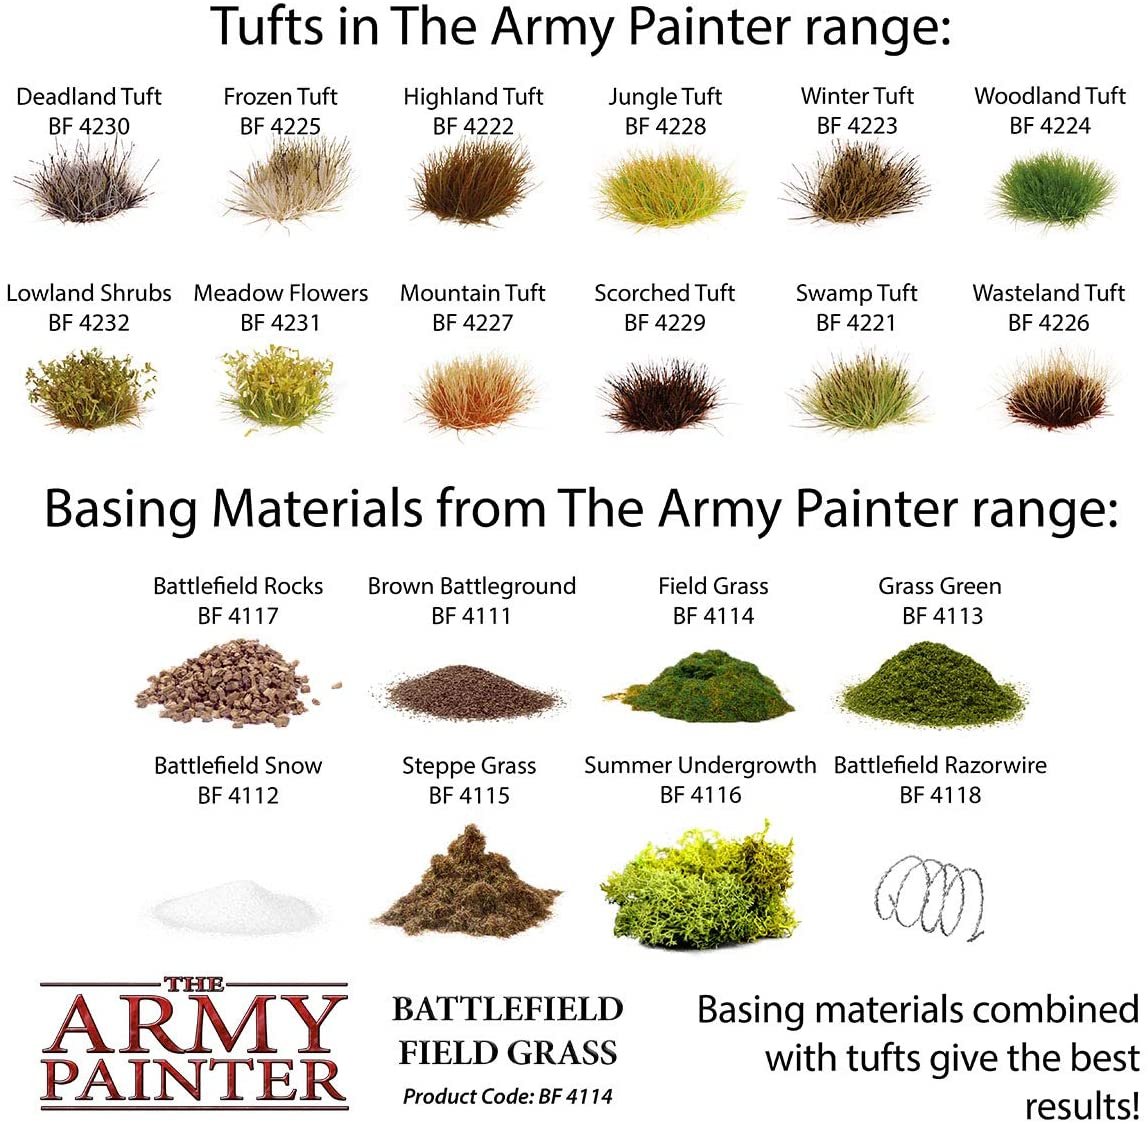 The Army Painter - Battlefield Basing: Field Grass